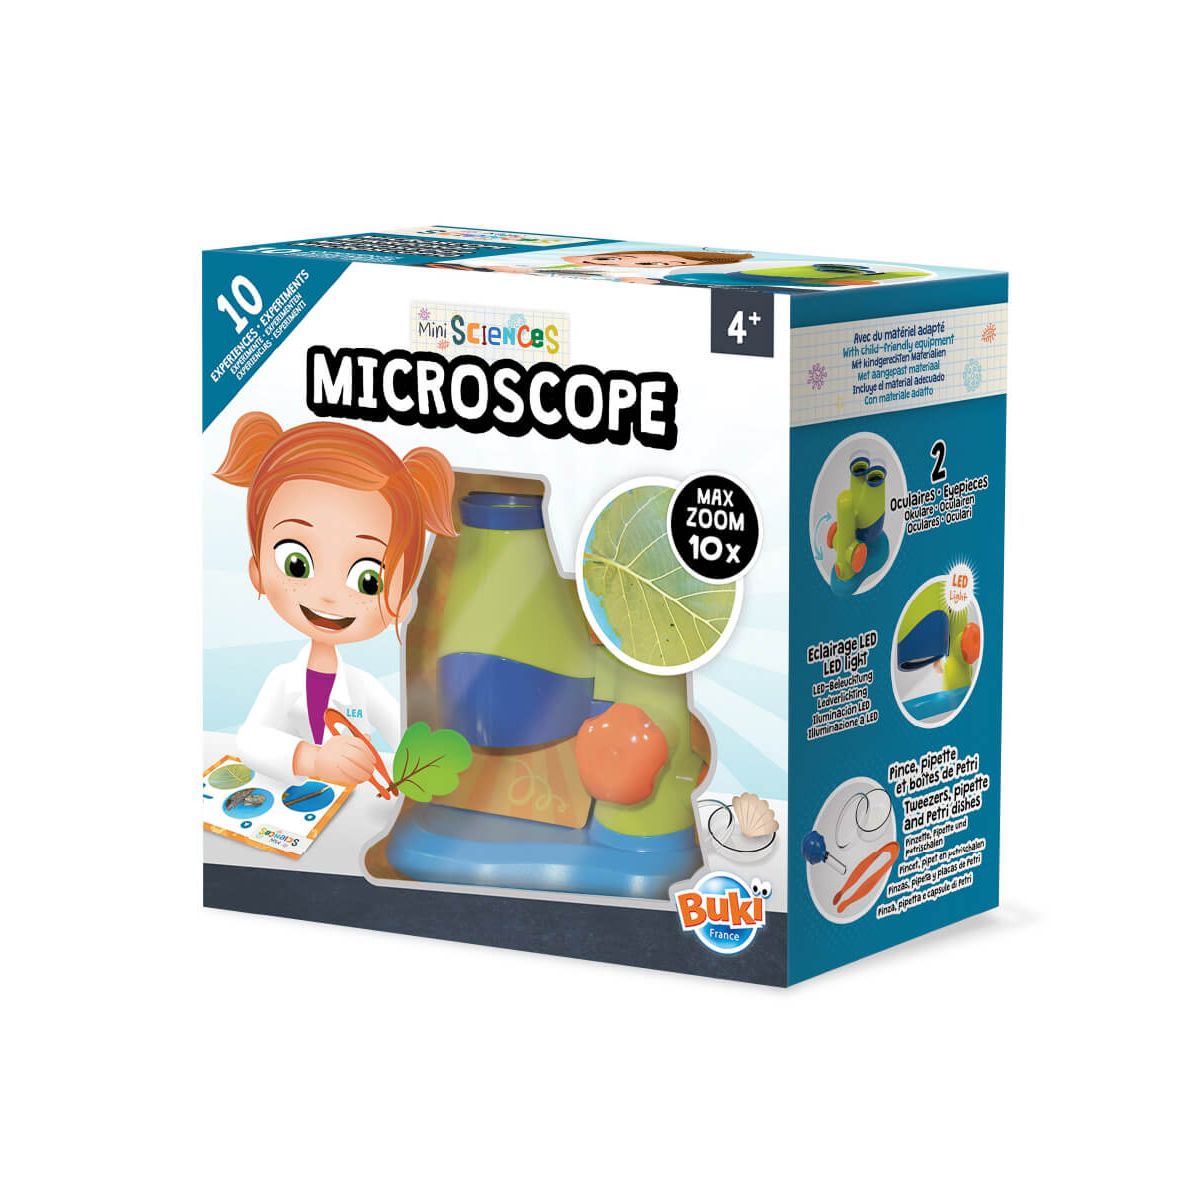 Vrai microscope ou loupe binoculaire pour les enfants - En direct de la  fabrique de crevettes